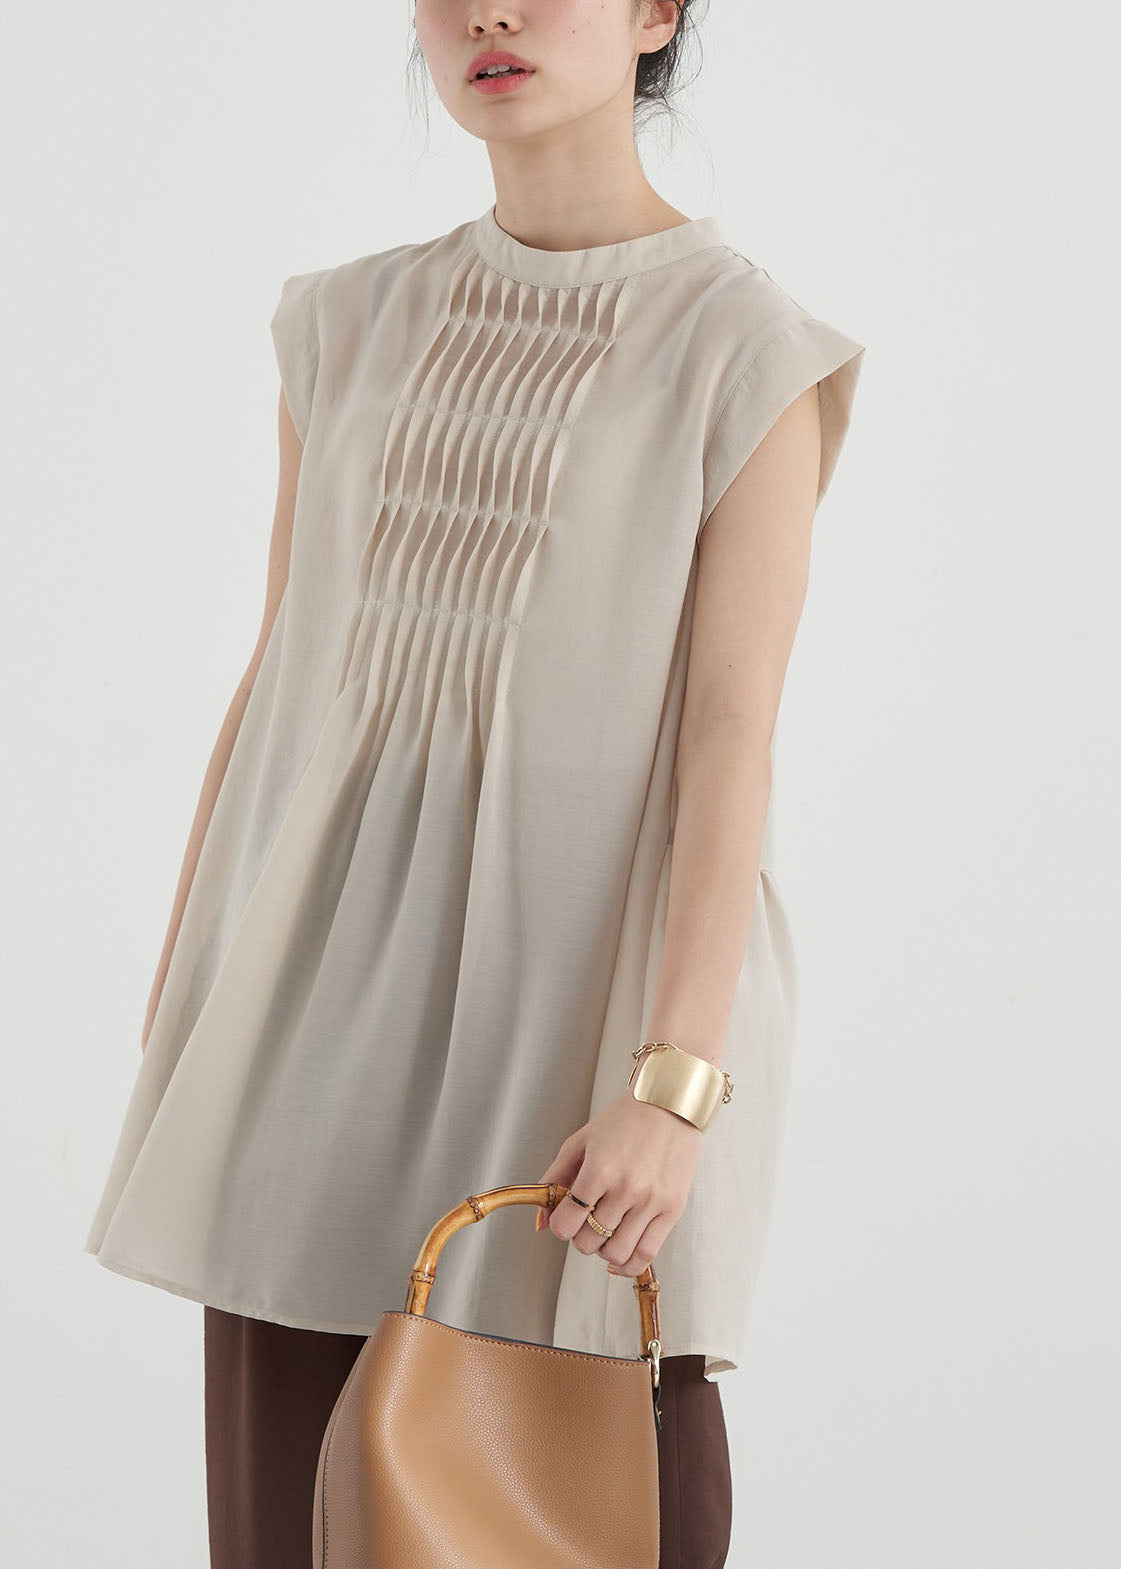 Women Apricot Slim Fit Pleated Cotton Long Shirt Sleeveless LY1324 - fabuloryshop